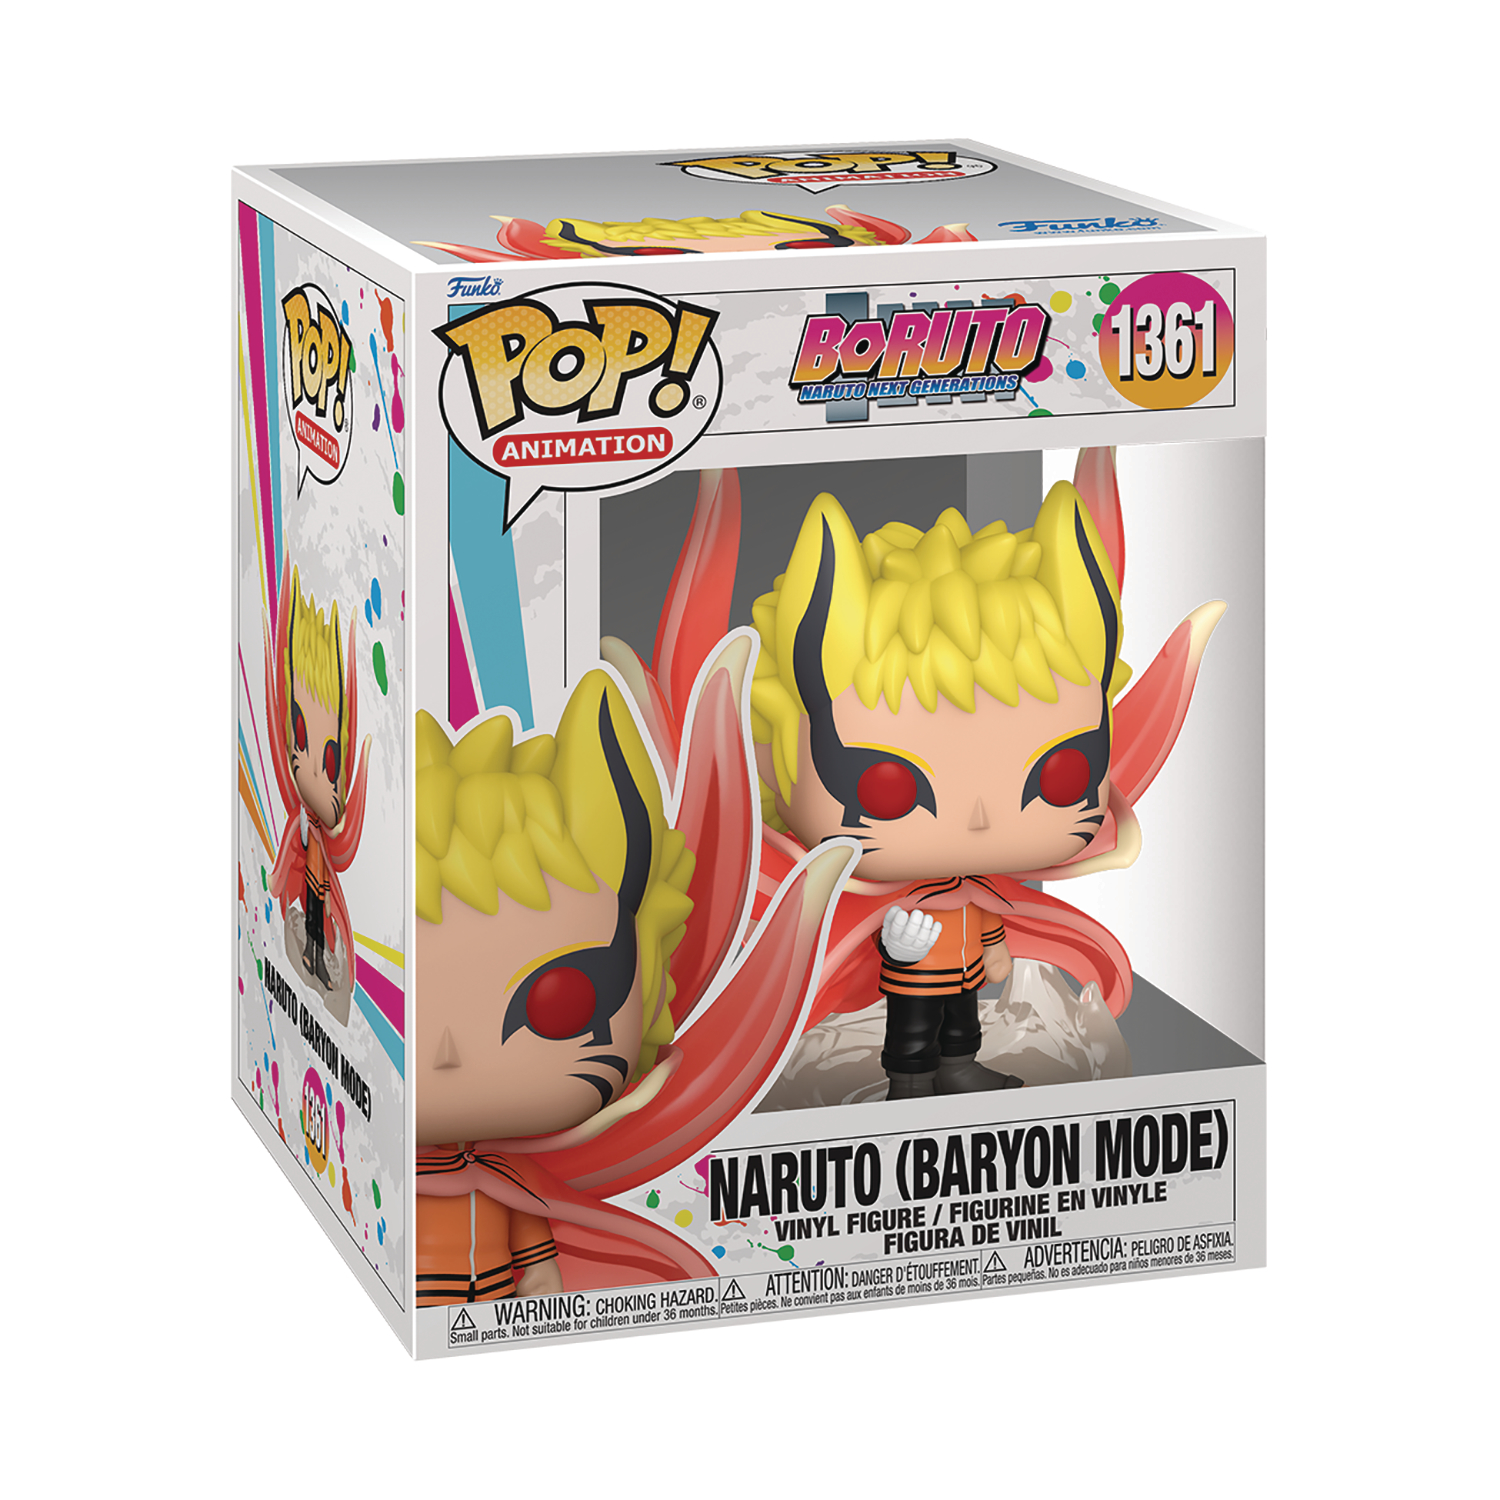 Boruto: Naruto Next Generations Naruto (Baryon Mode) 6-Inch Pop! Vinyl Figure #1361